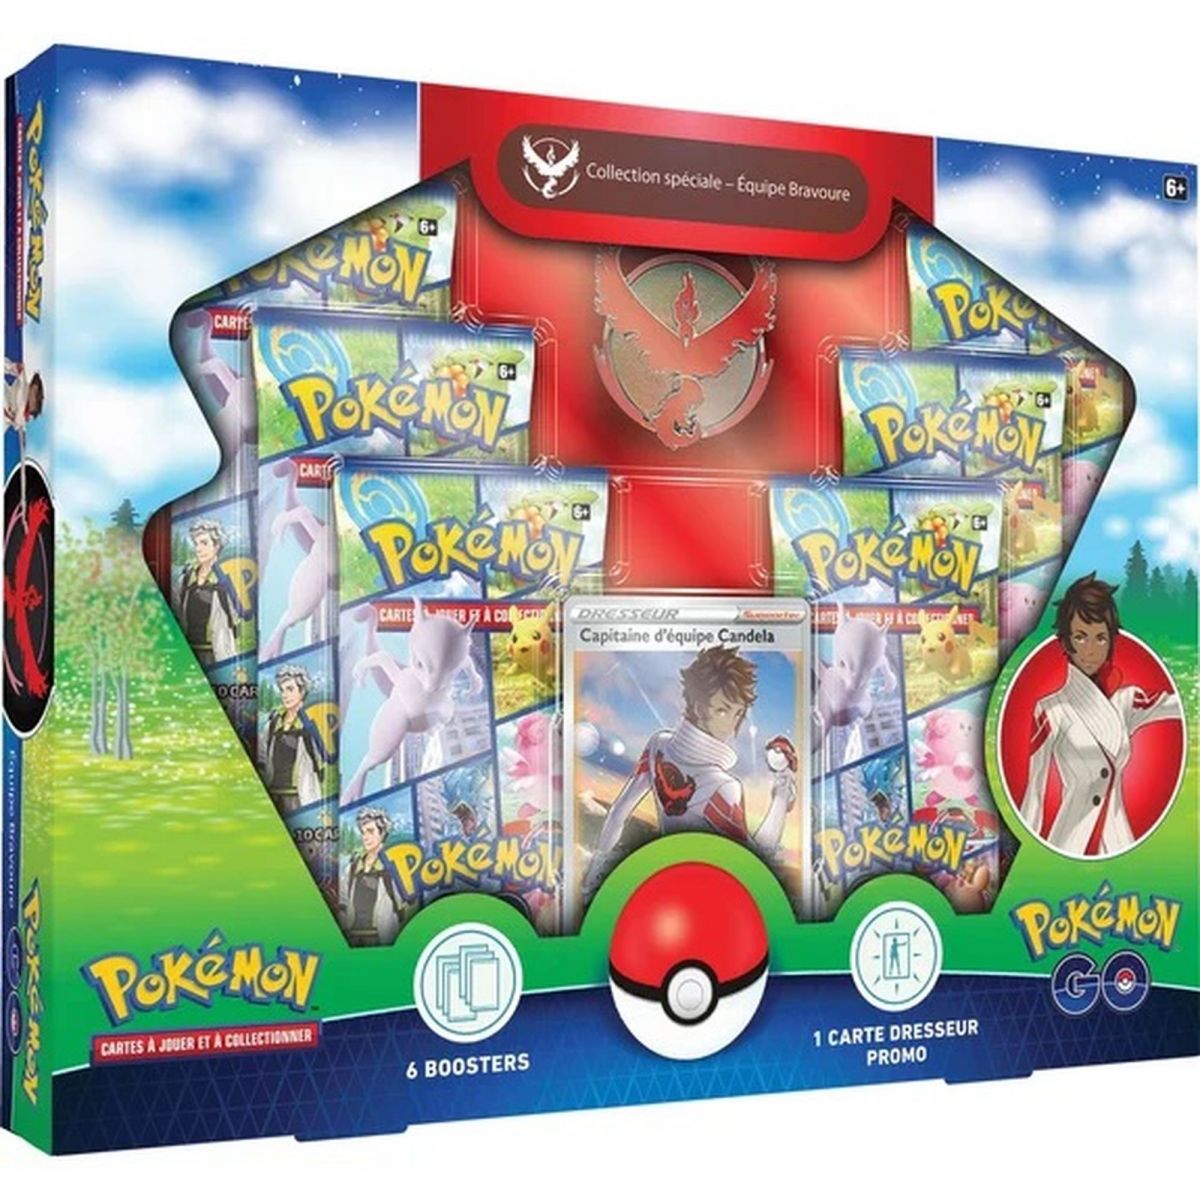 Item Pokémon - Box - Special Collection Box - Team Bravery - Pokémon Go [EB10.5] - FR